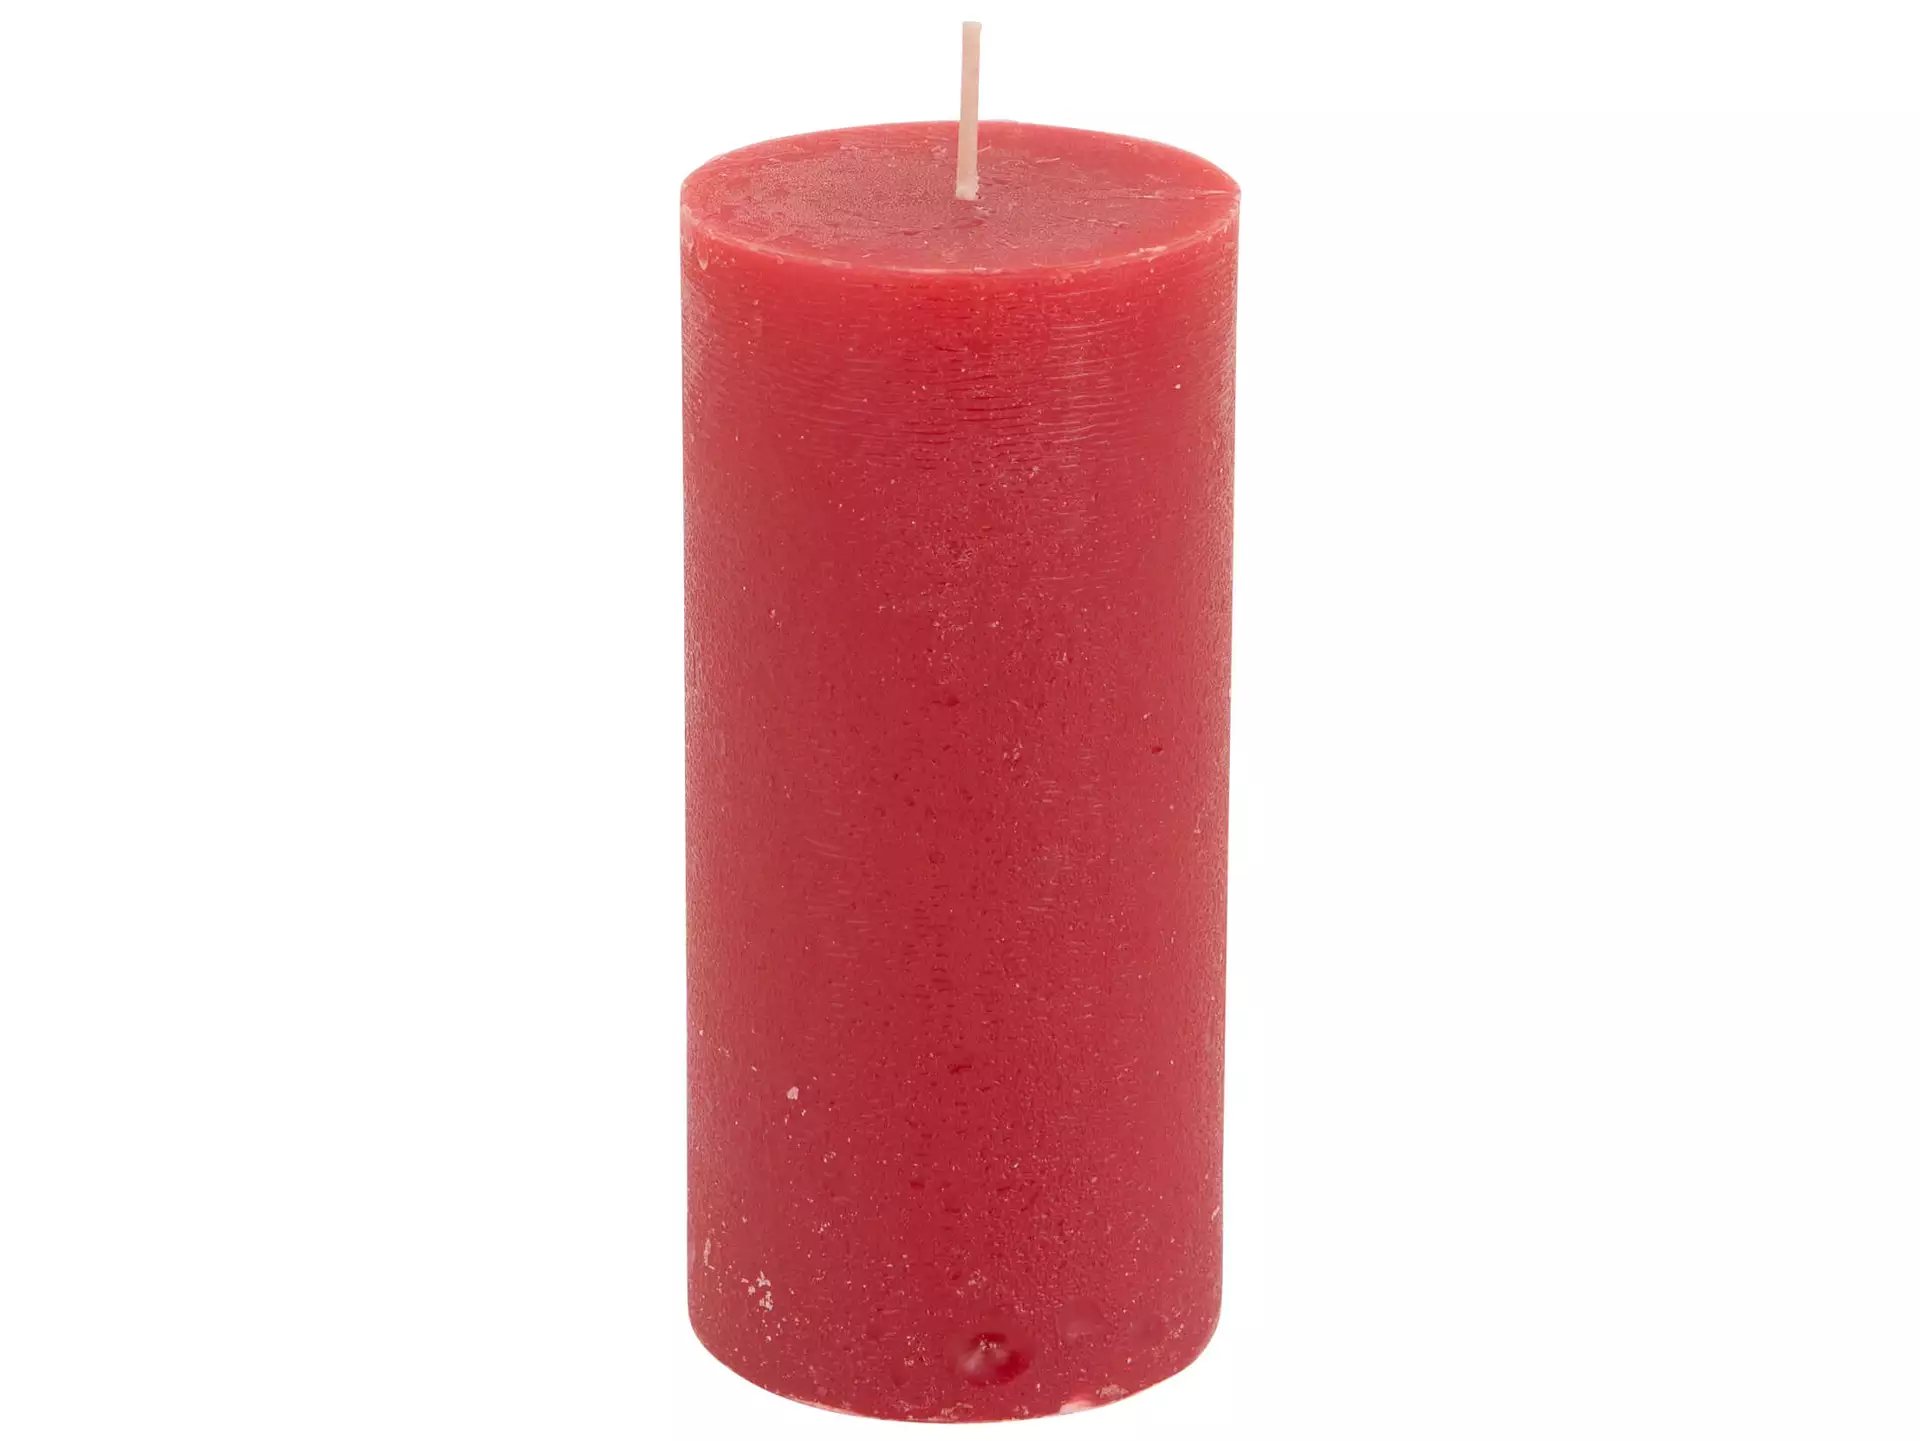 Kerze, Zylinder, Rot, Brenndauer 70 Std., Durchmesser 7 cm h 15 cm